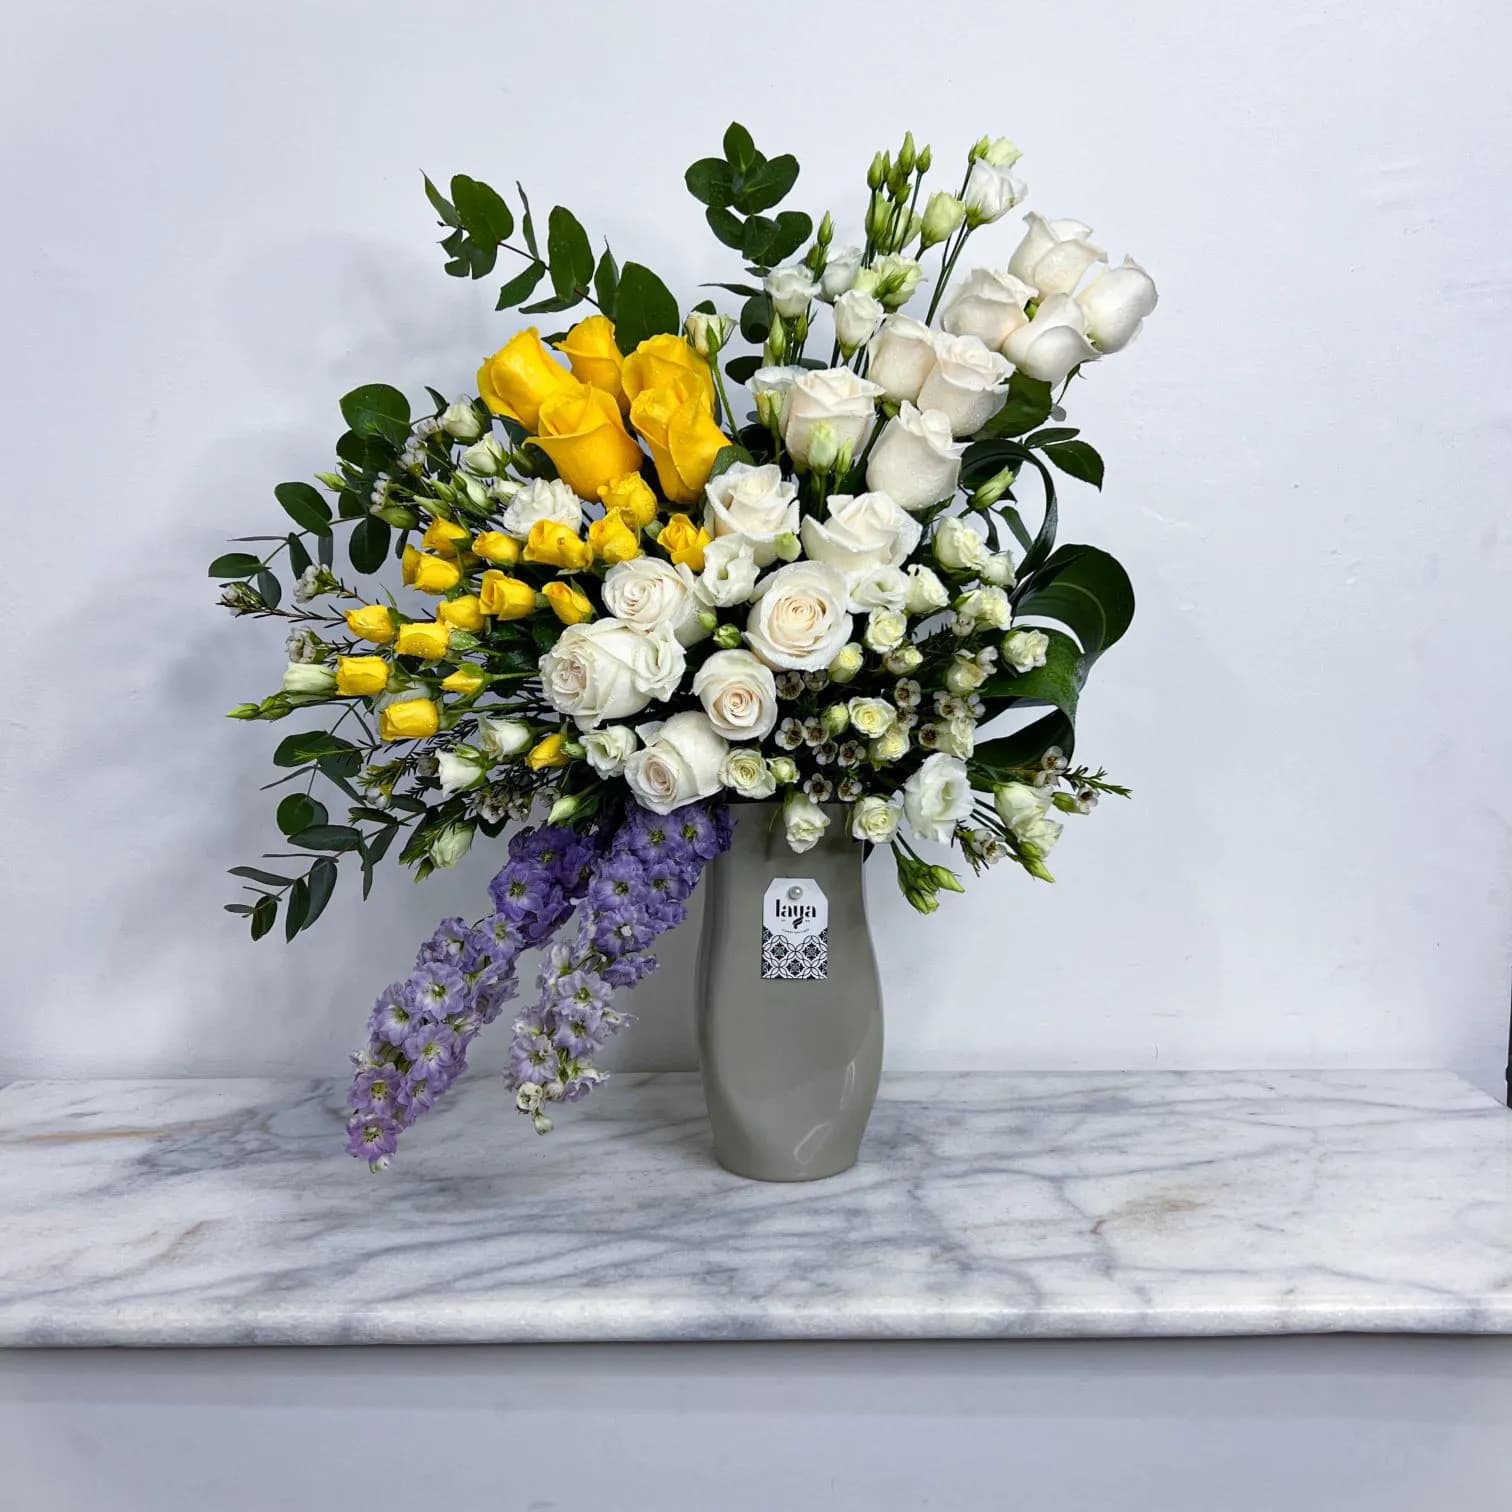 Special Gray Vase